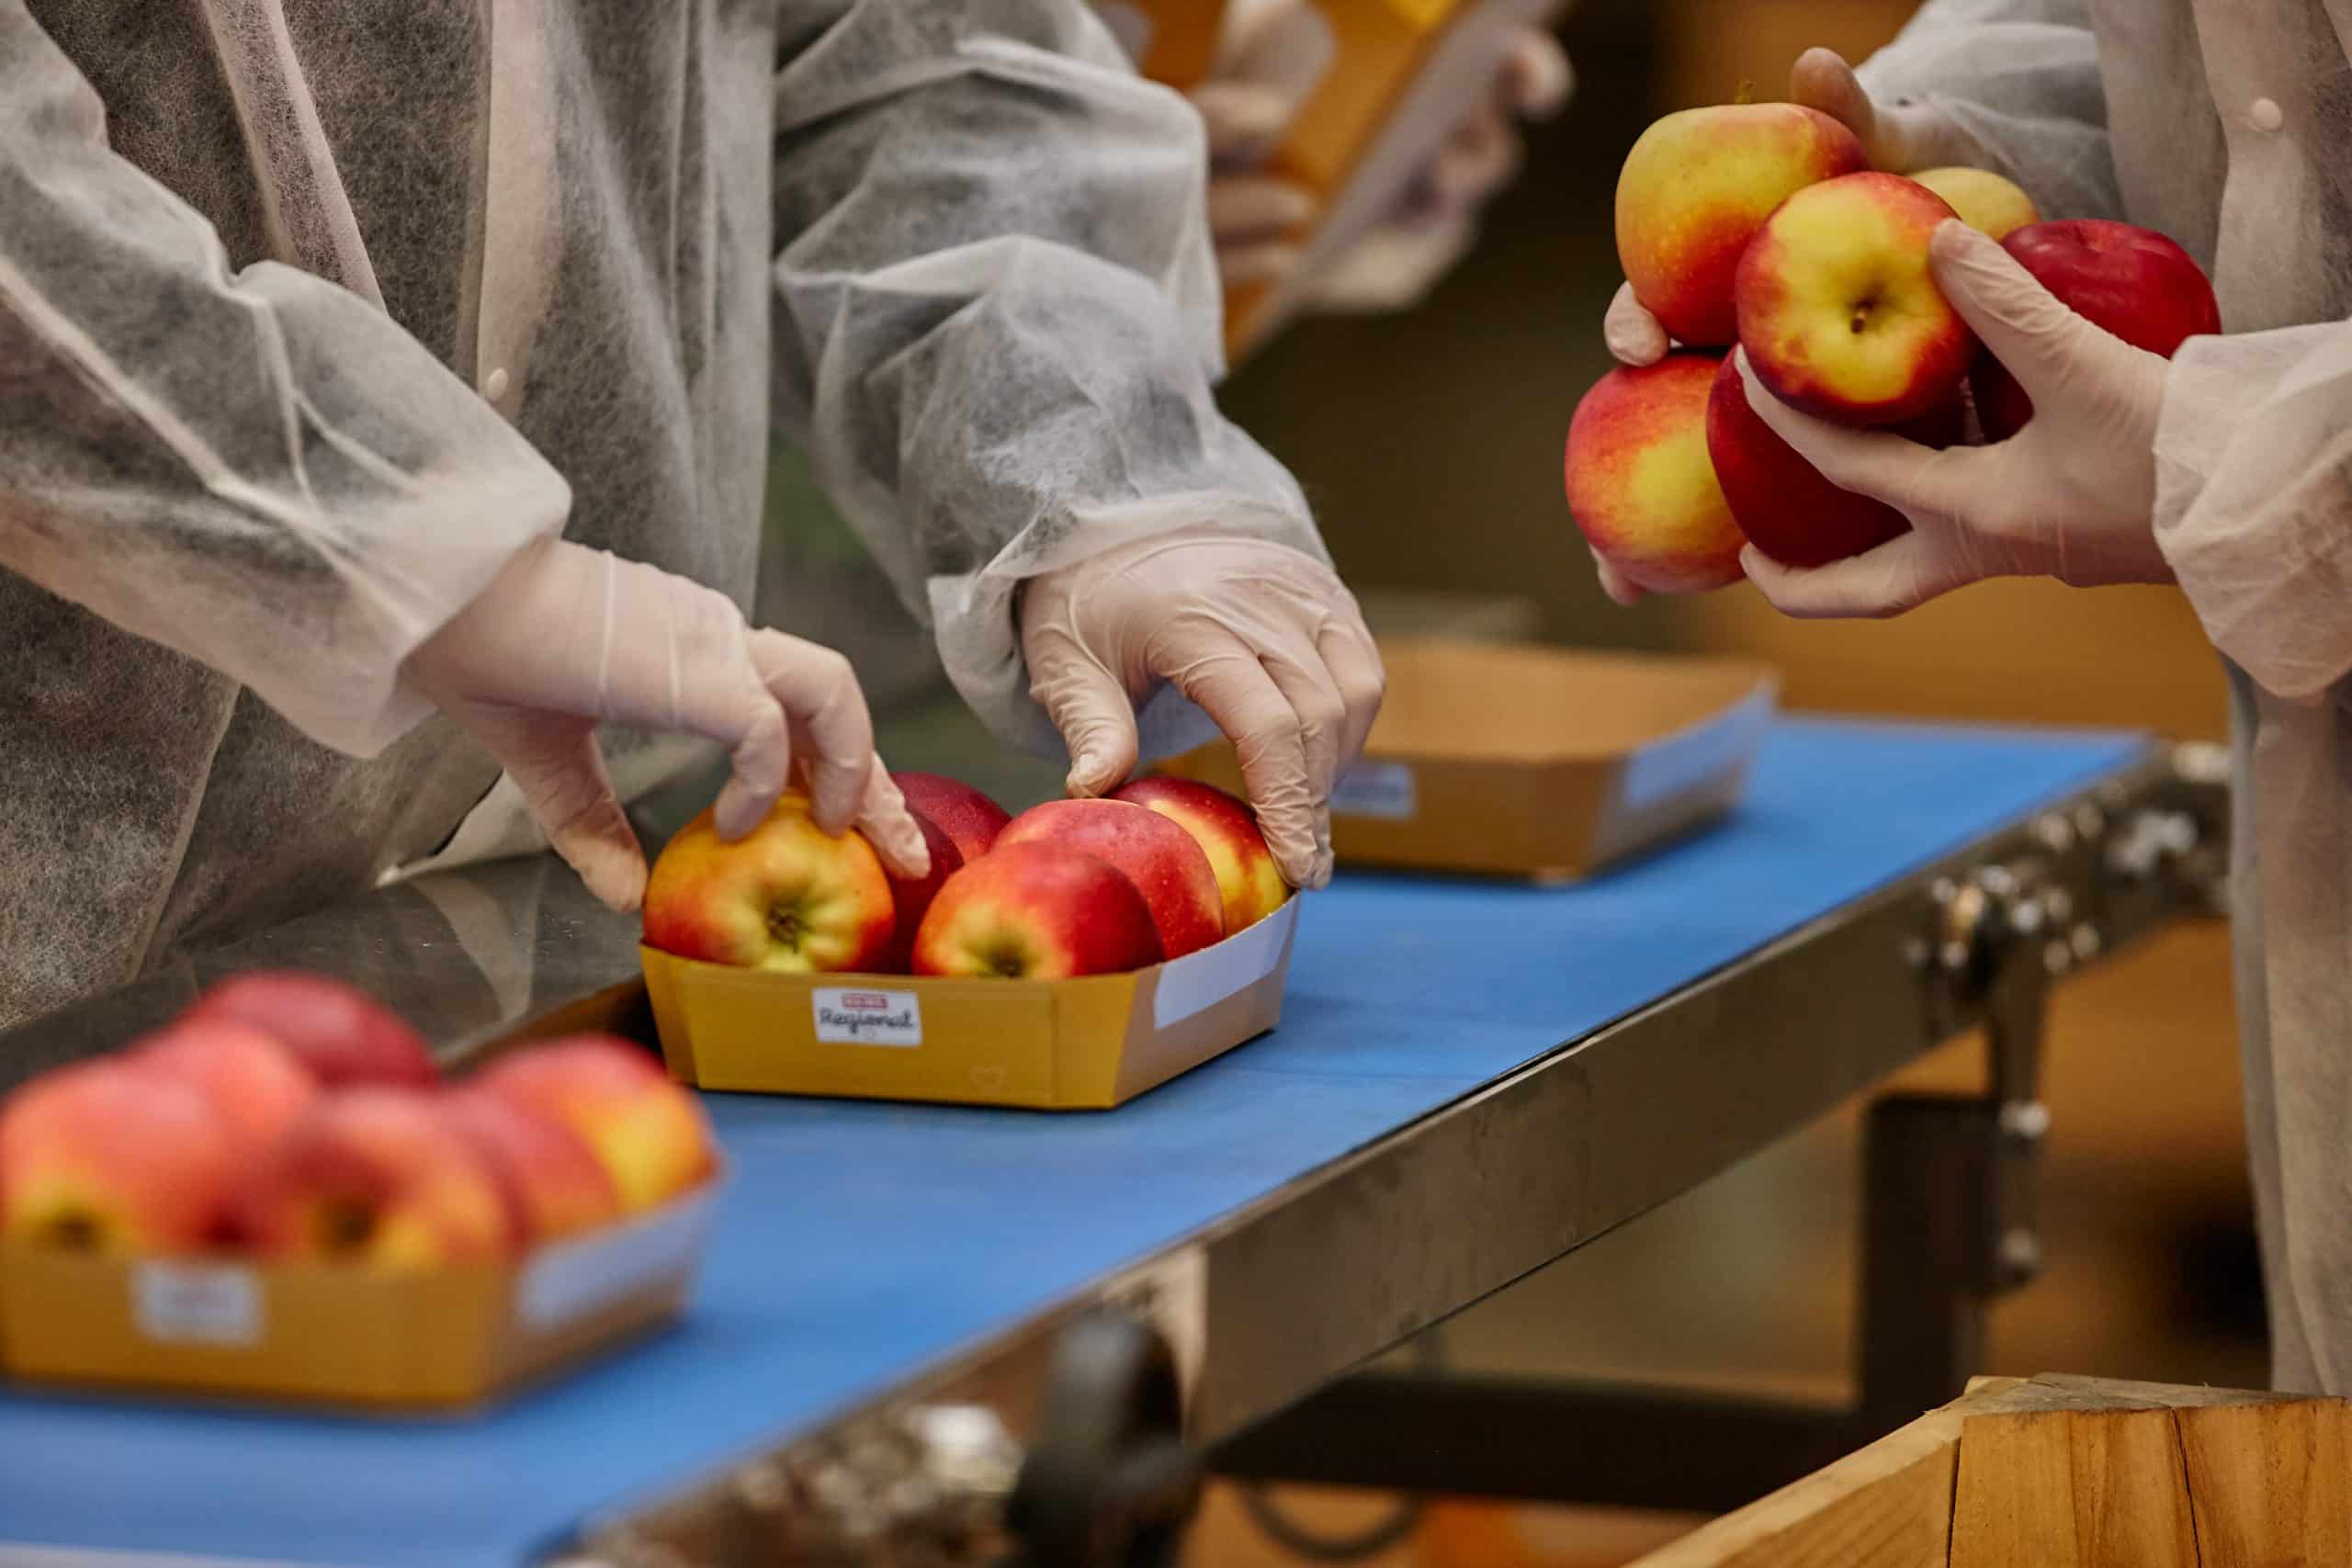 Äpfel werden in Papierverpackungen gelegt. Ein Symbolbild für unsere vier Säulen für mehr Nachhaltigkeit.